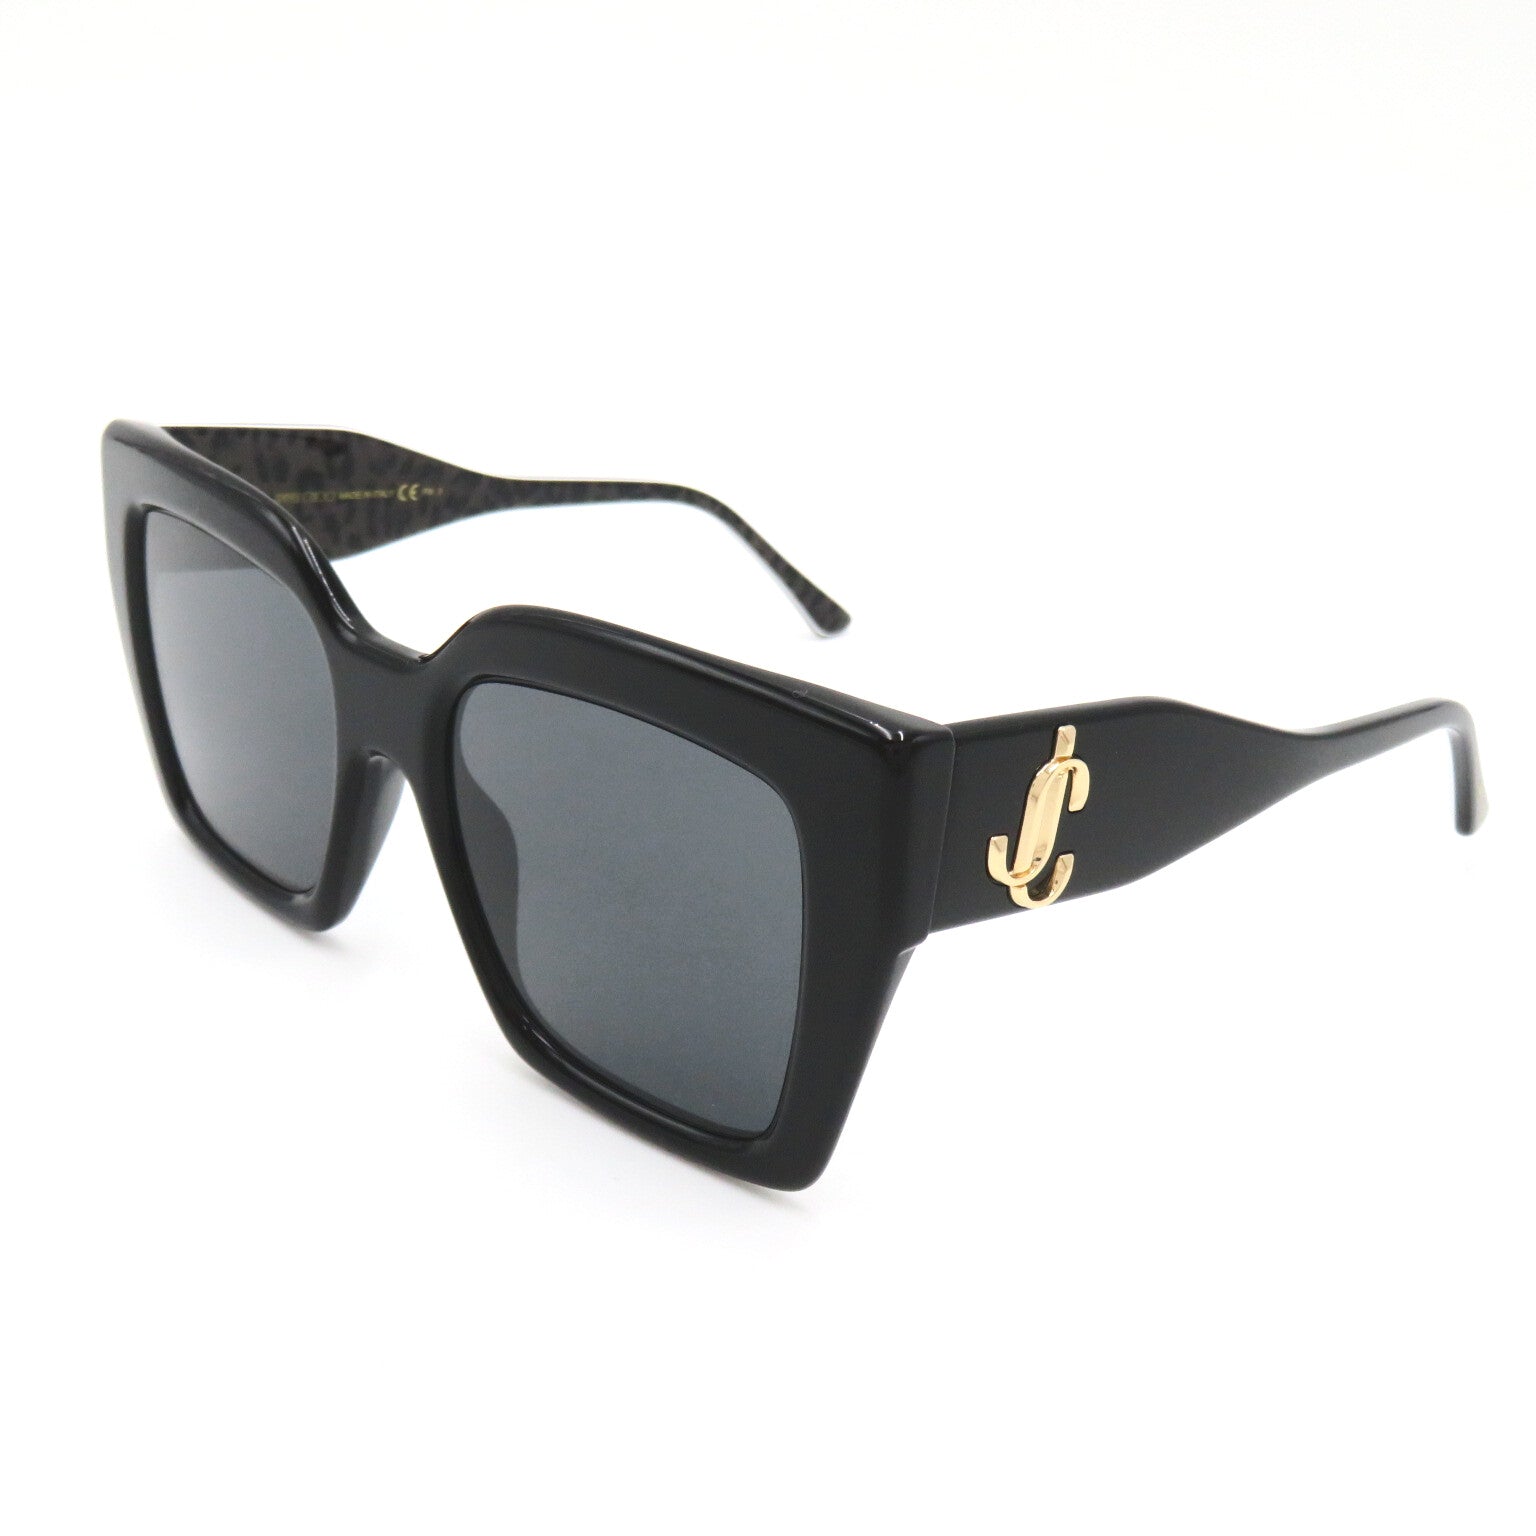 Jimmy Choo Sun Glasses   Plastic   Black / Gr / Gray Dark Lenses ELENI/G 1EI/IR